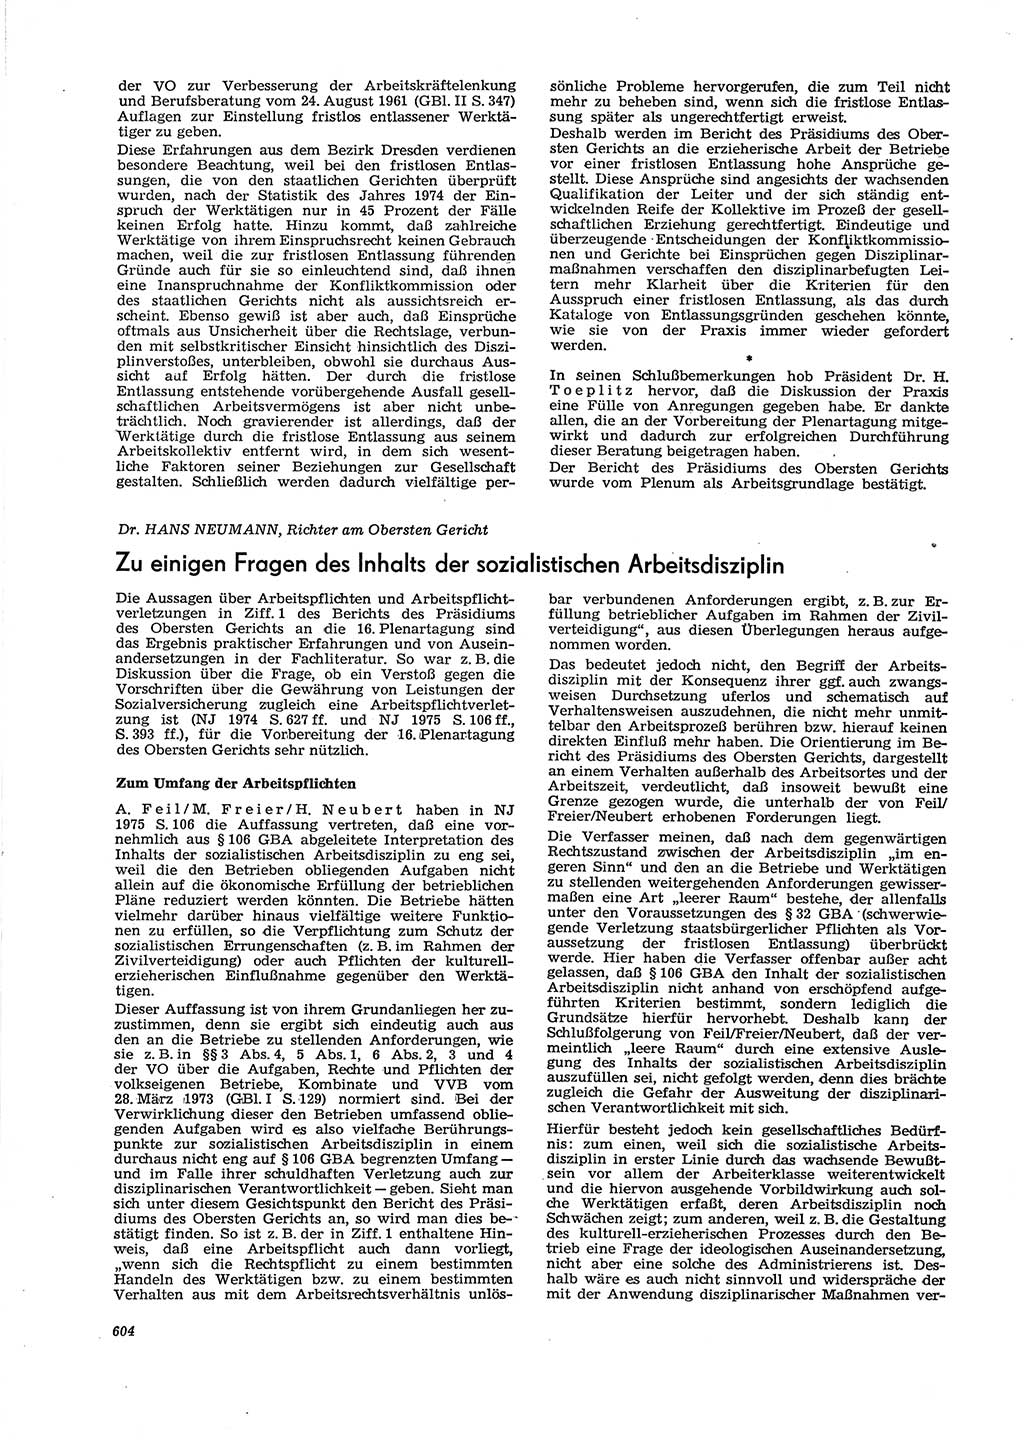 Neue Justiz (NJ), Zeitschrift für Recht und Rechtswissenschaft [Deutsche Demokratische Republik (DDR)], 29. Jahrgang 1975, Seite 604 (NJ DDR 1975, S. 604)